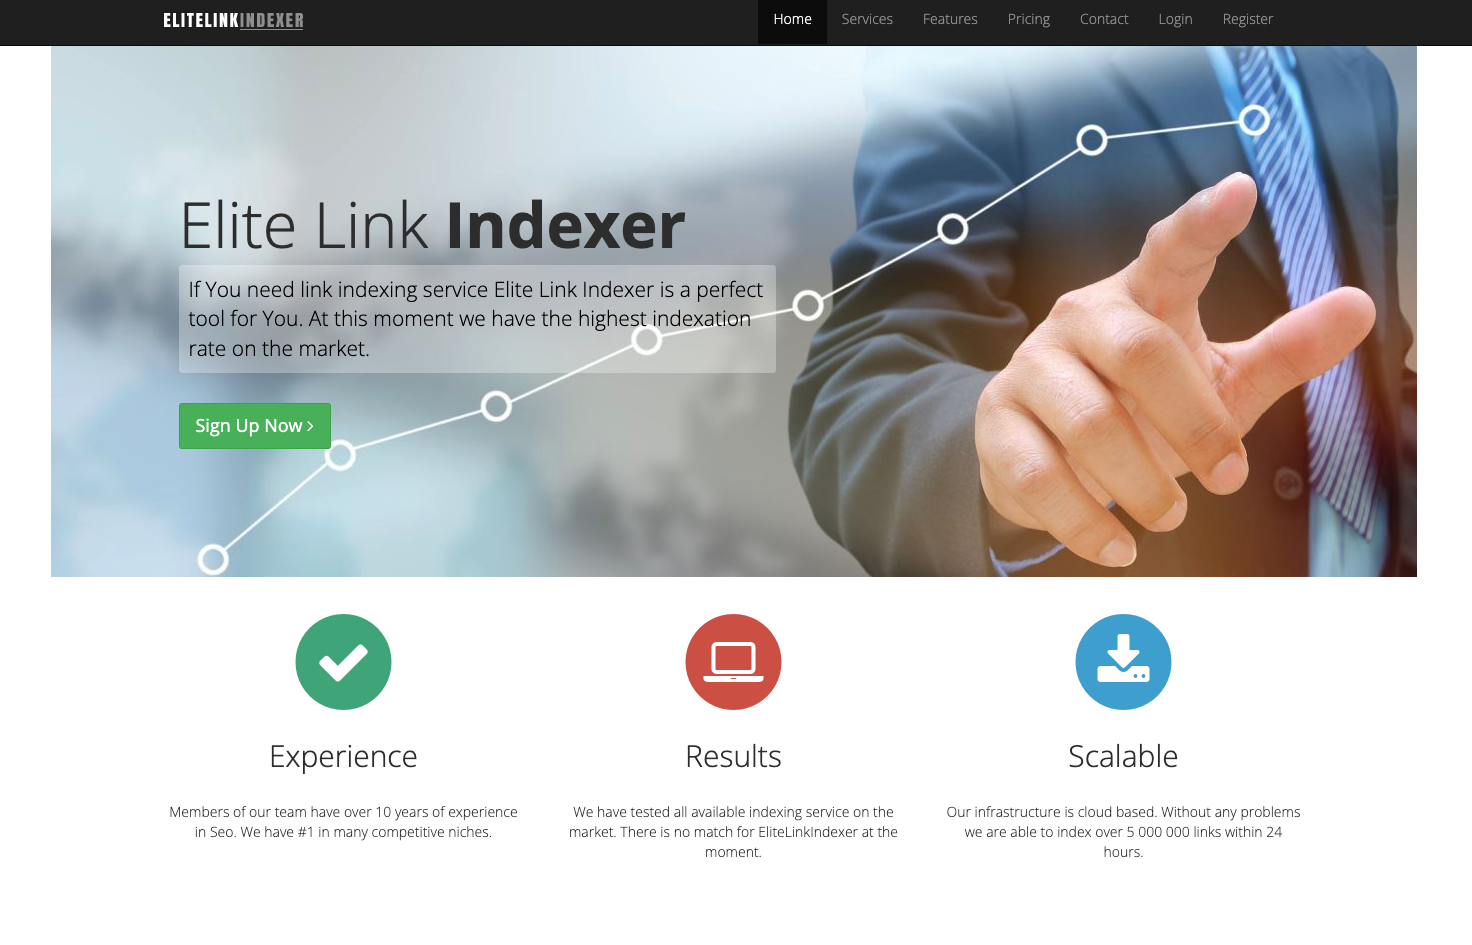 Elite Link Indexer for indexing third-party websites' URLs